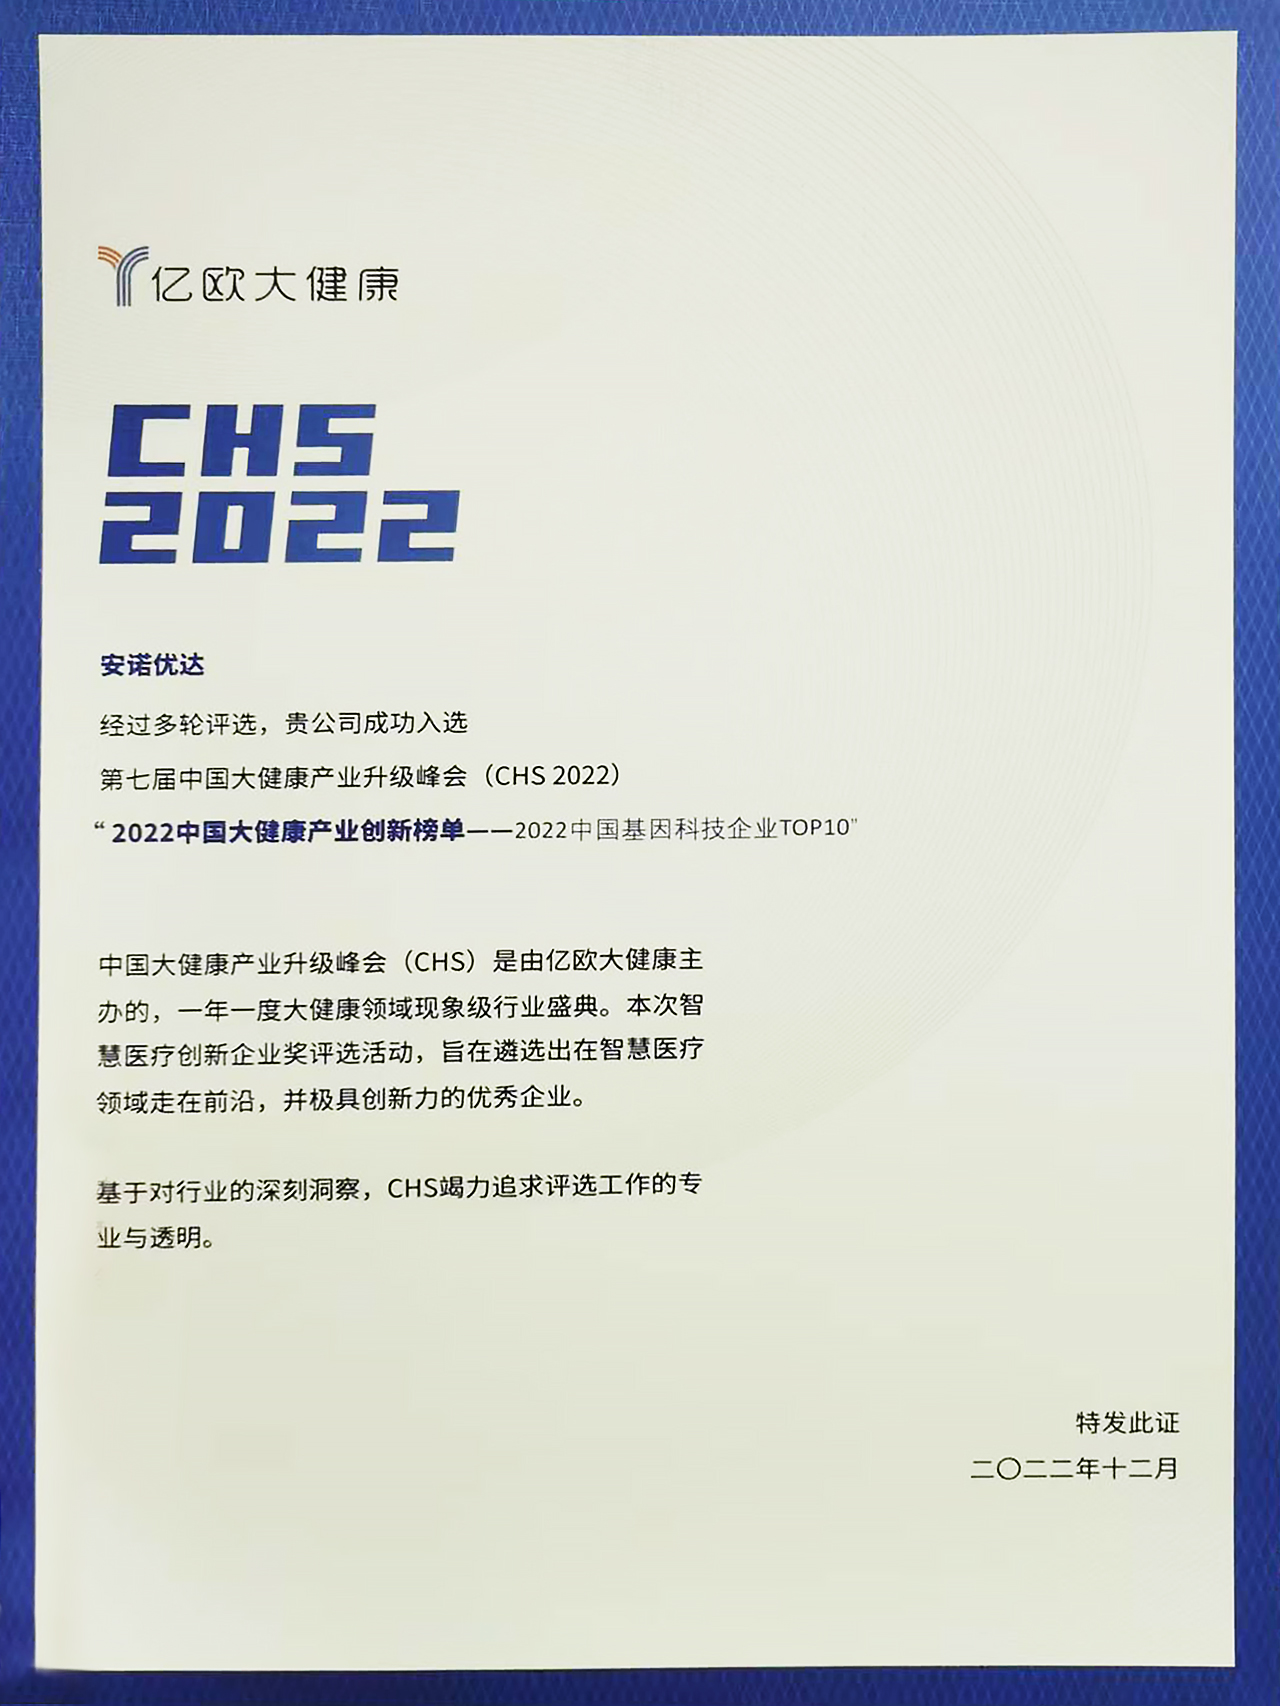 2022年中国基因科技企业TOP10